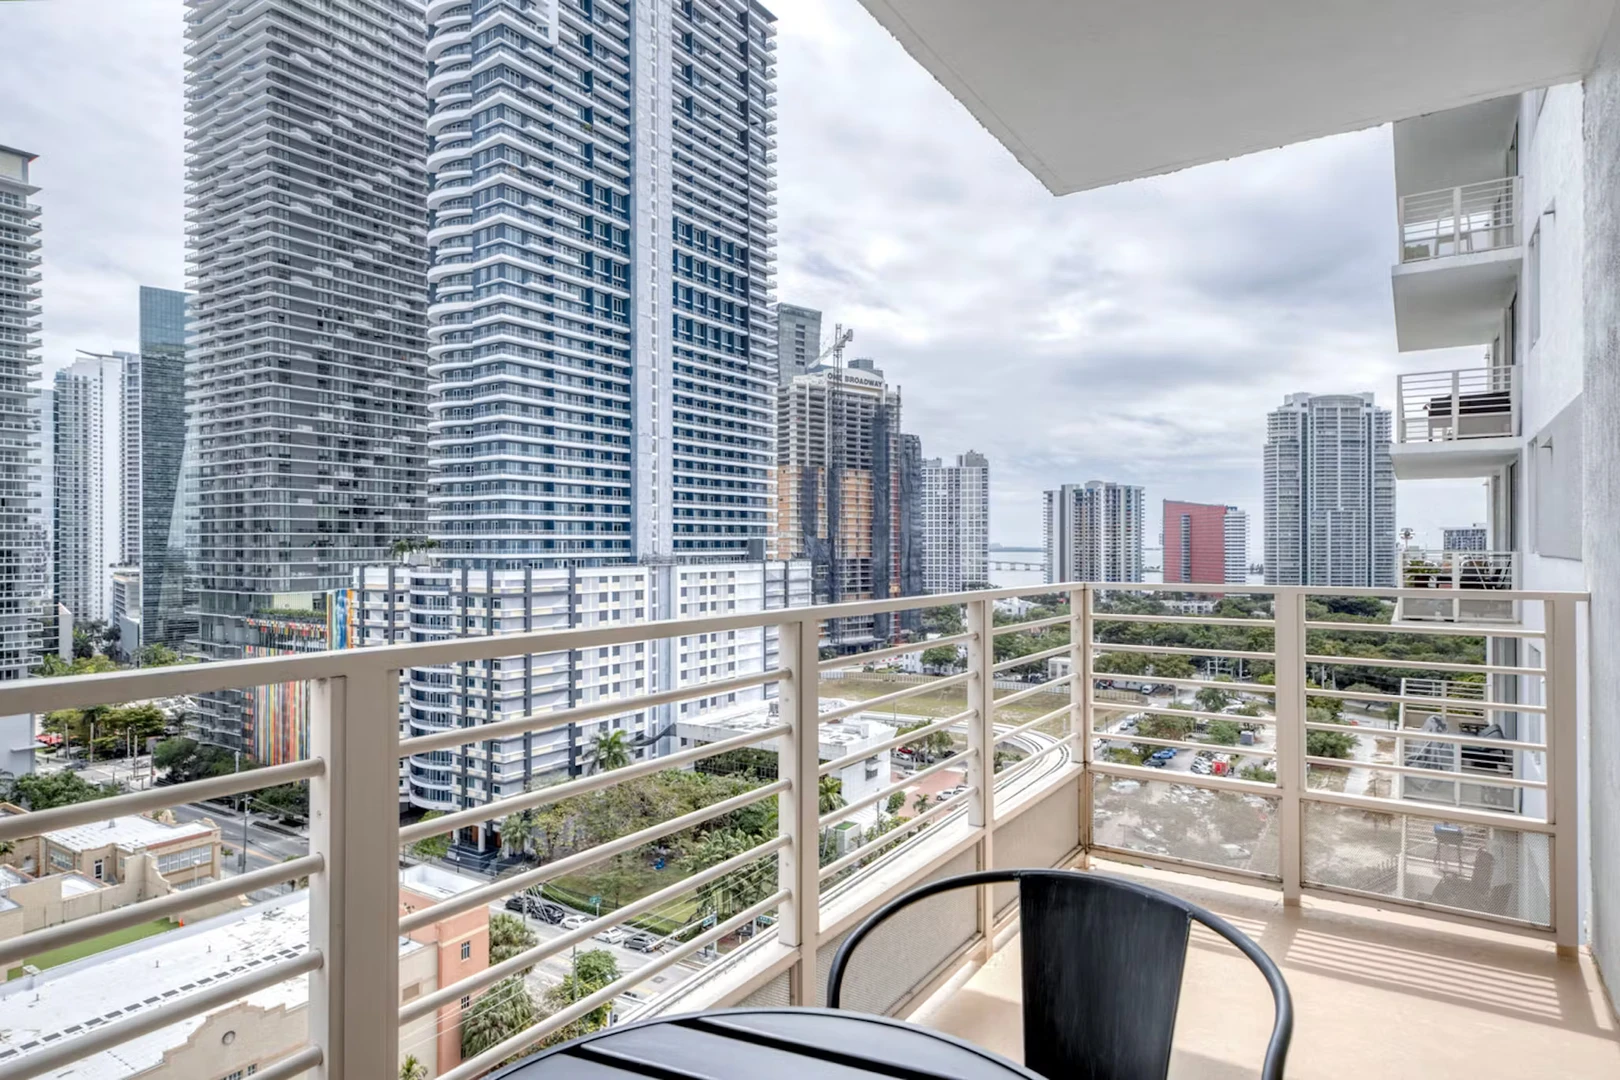 Alojamiento situado en el centro de Miami